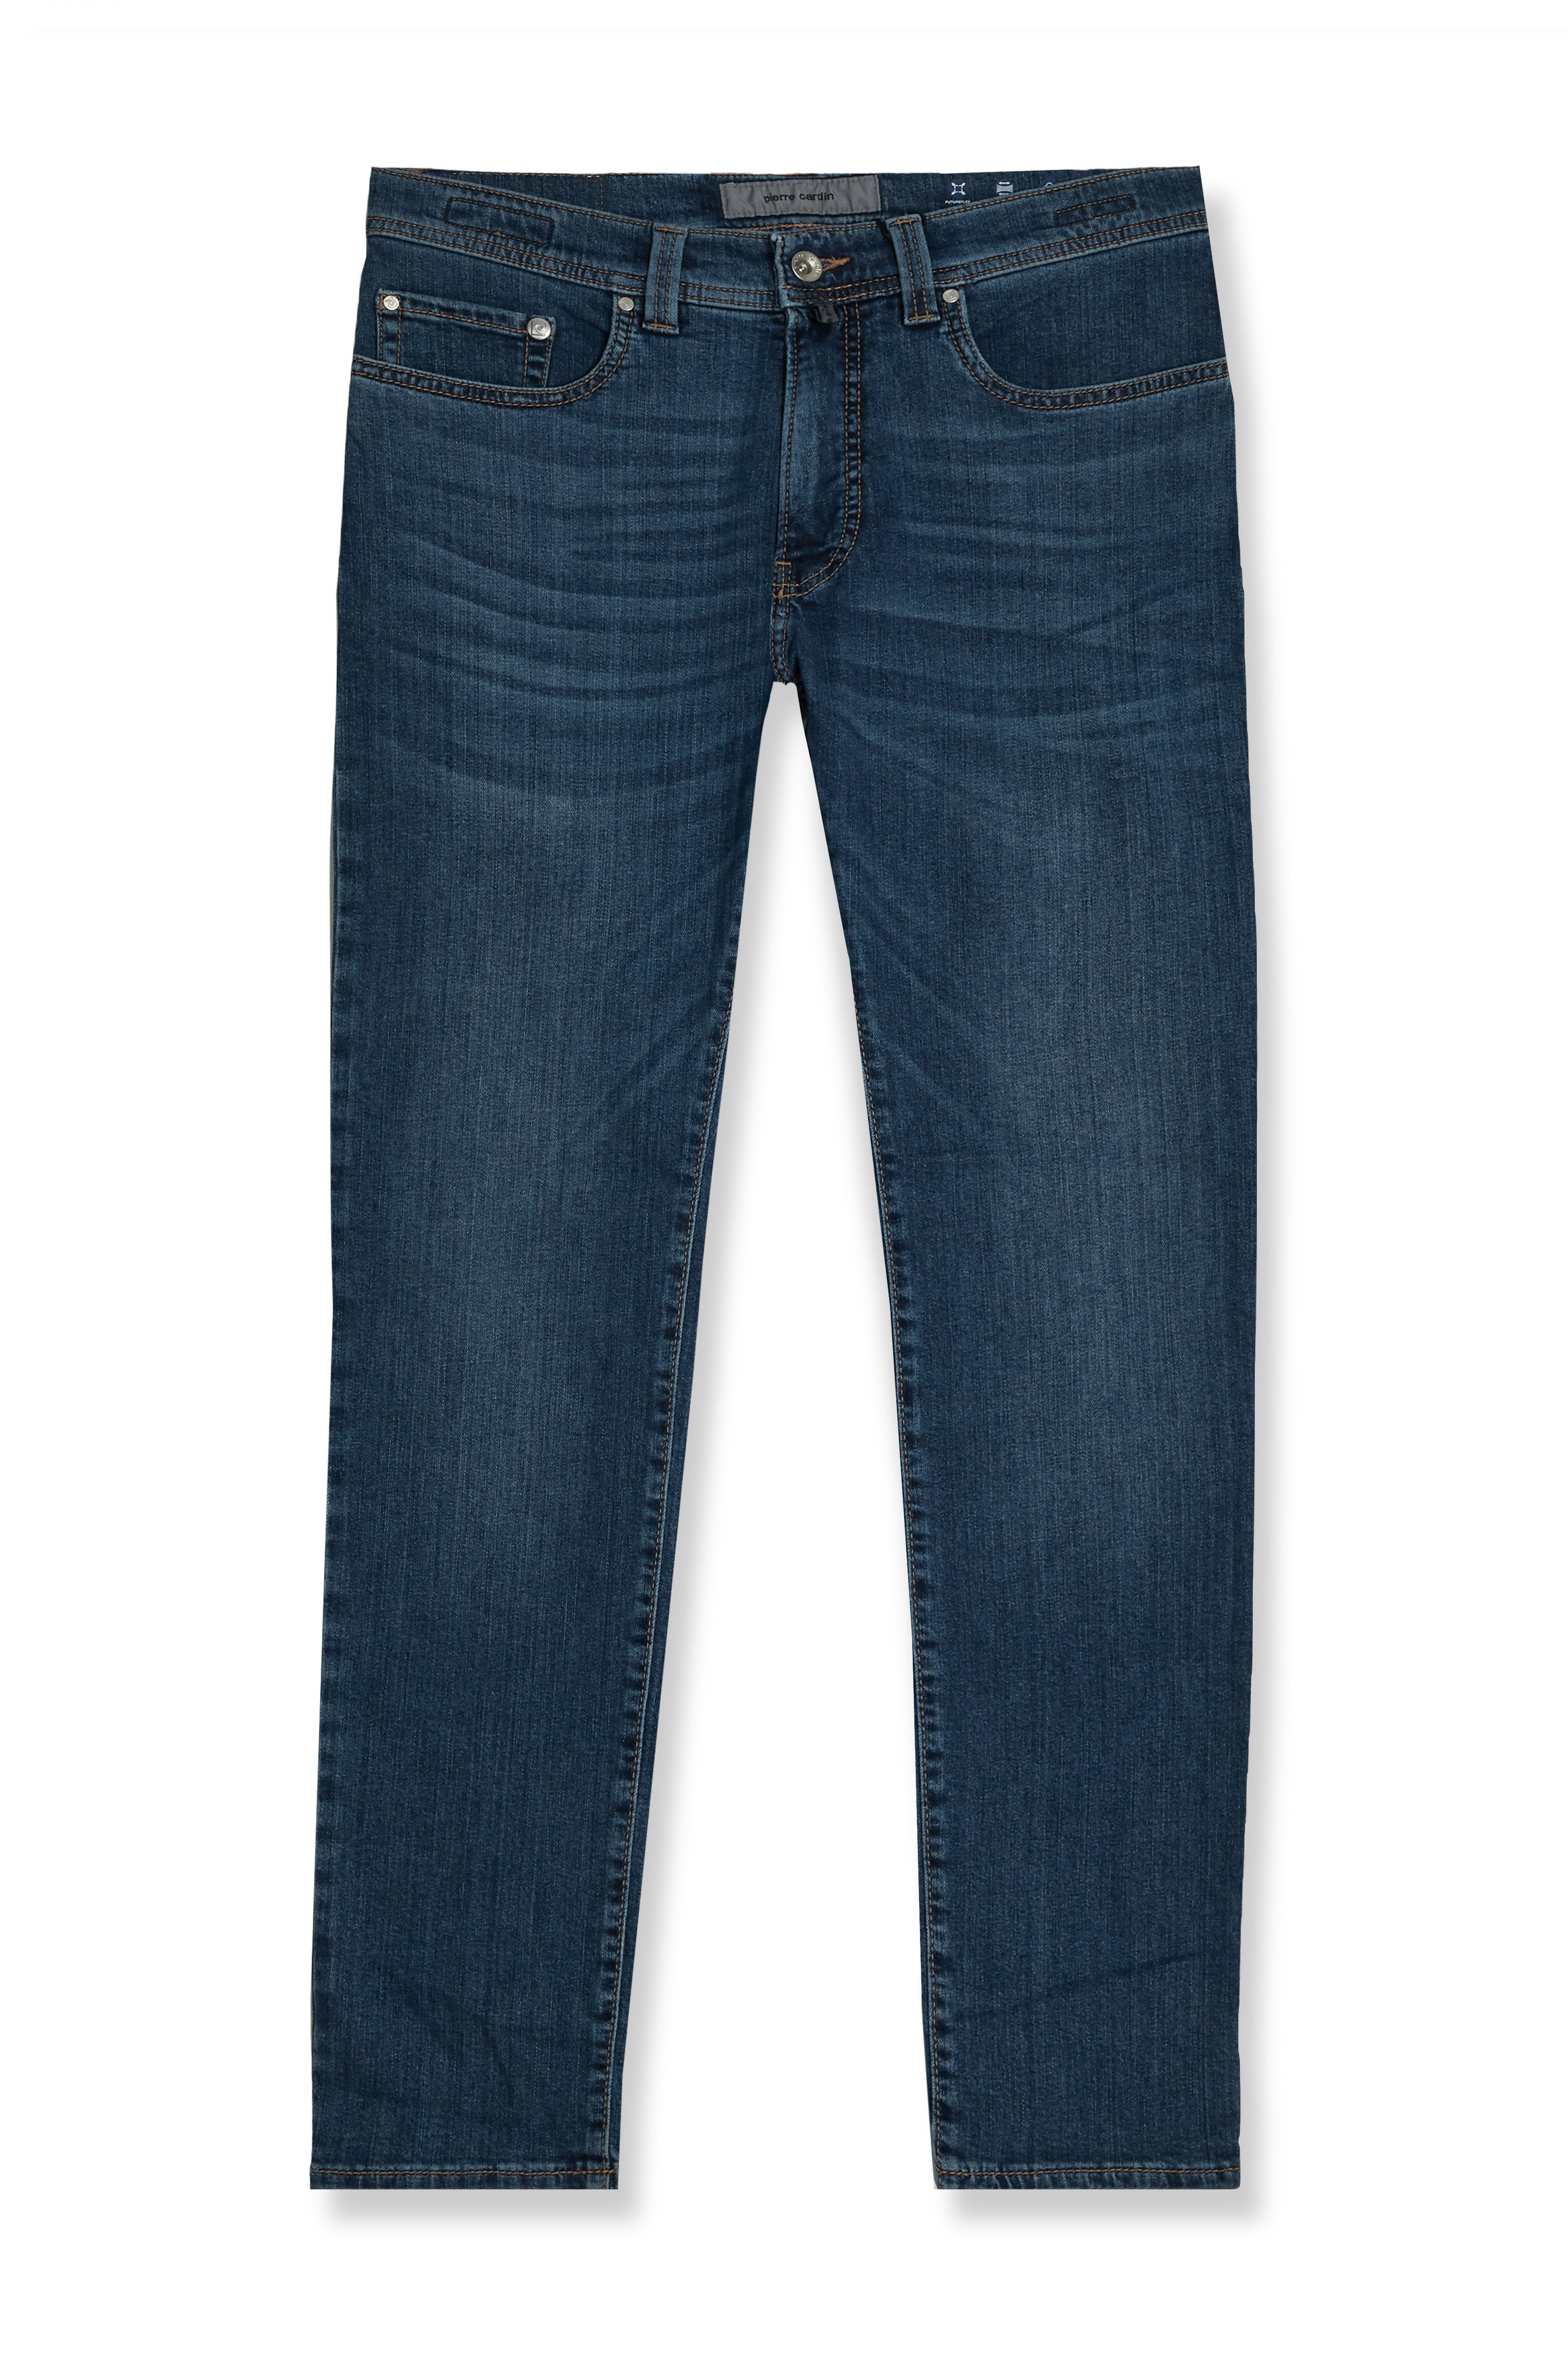 Lyon Pierre Cardin Cardin Futureflex (1-tlg) Herren Jeans Pierre - blau 5-Pocket-Jeans